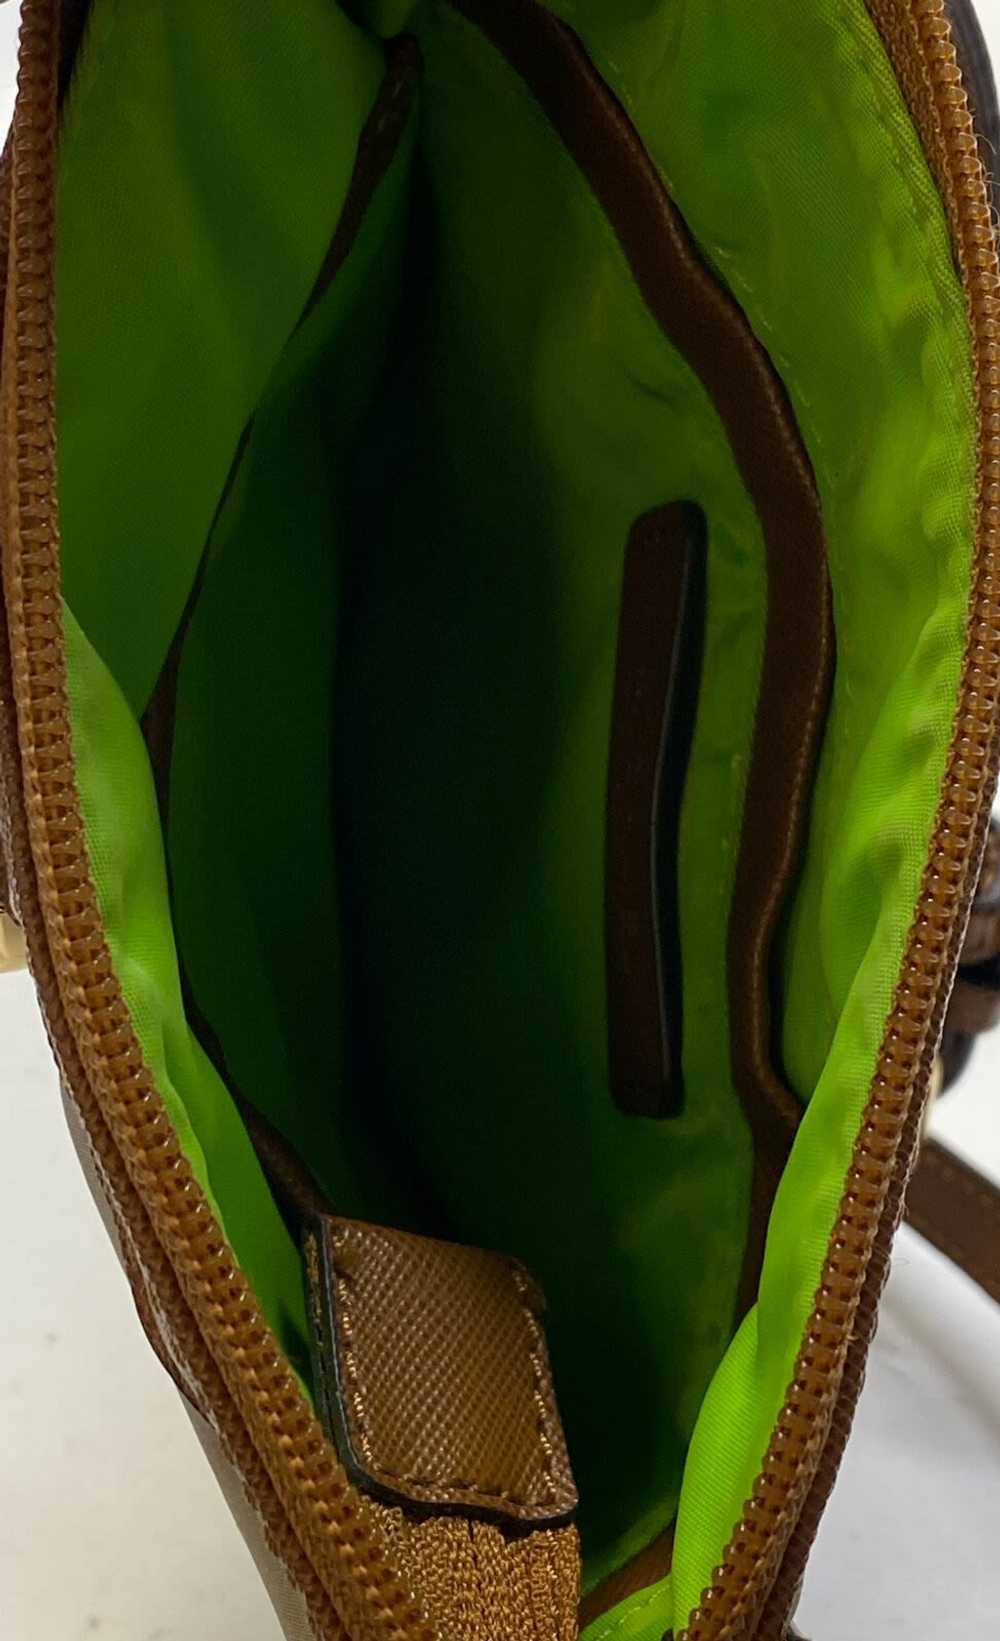 Michael Kors Saddle Bag - image 4